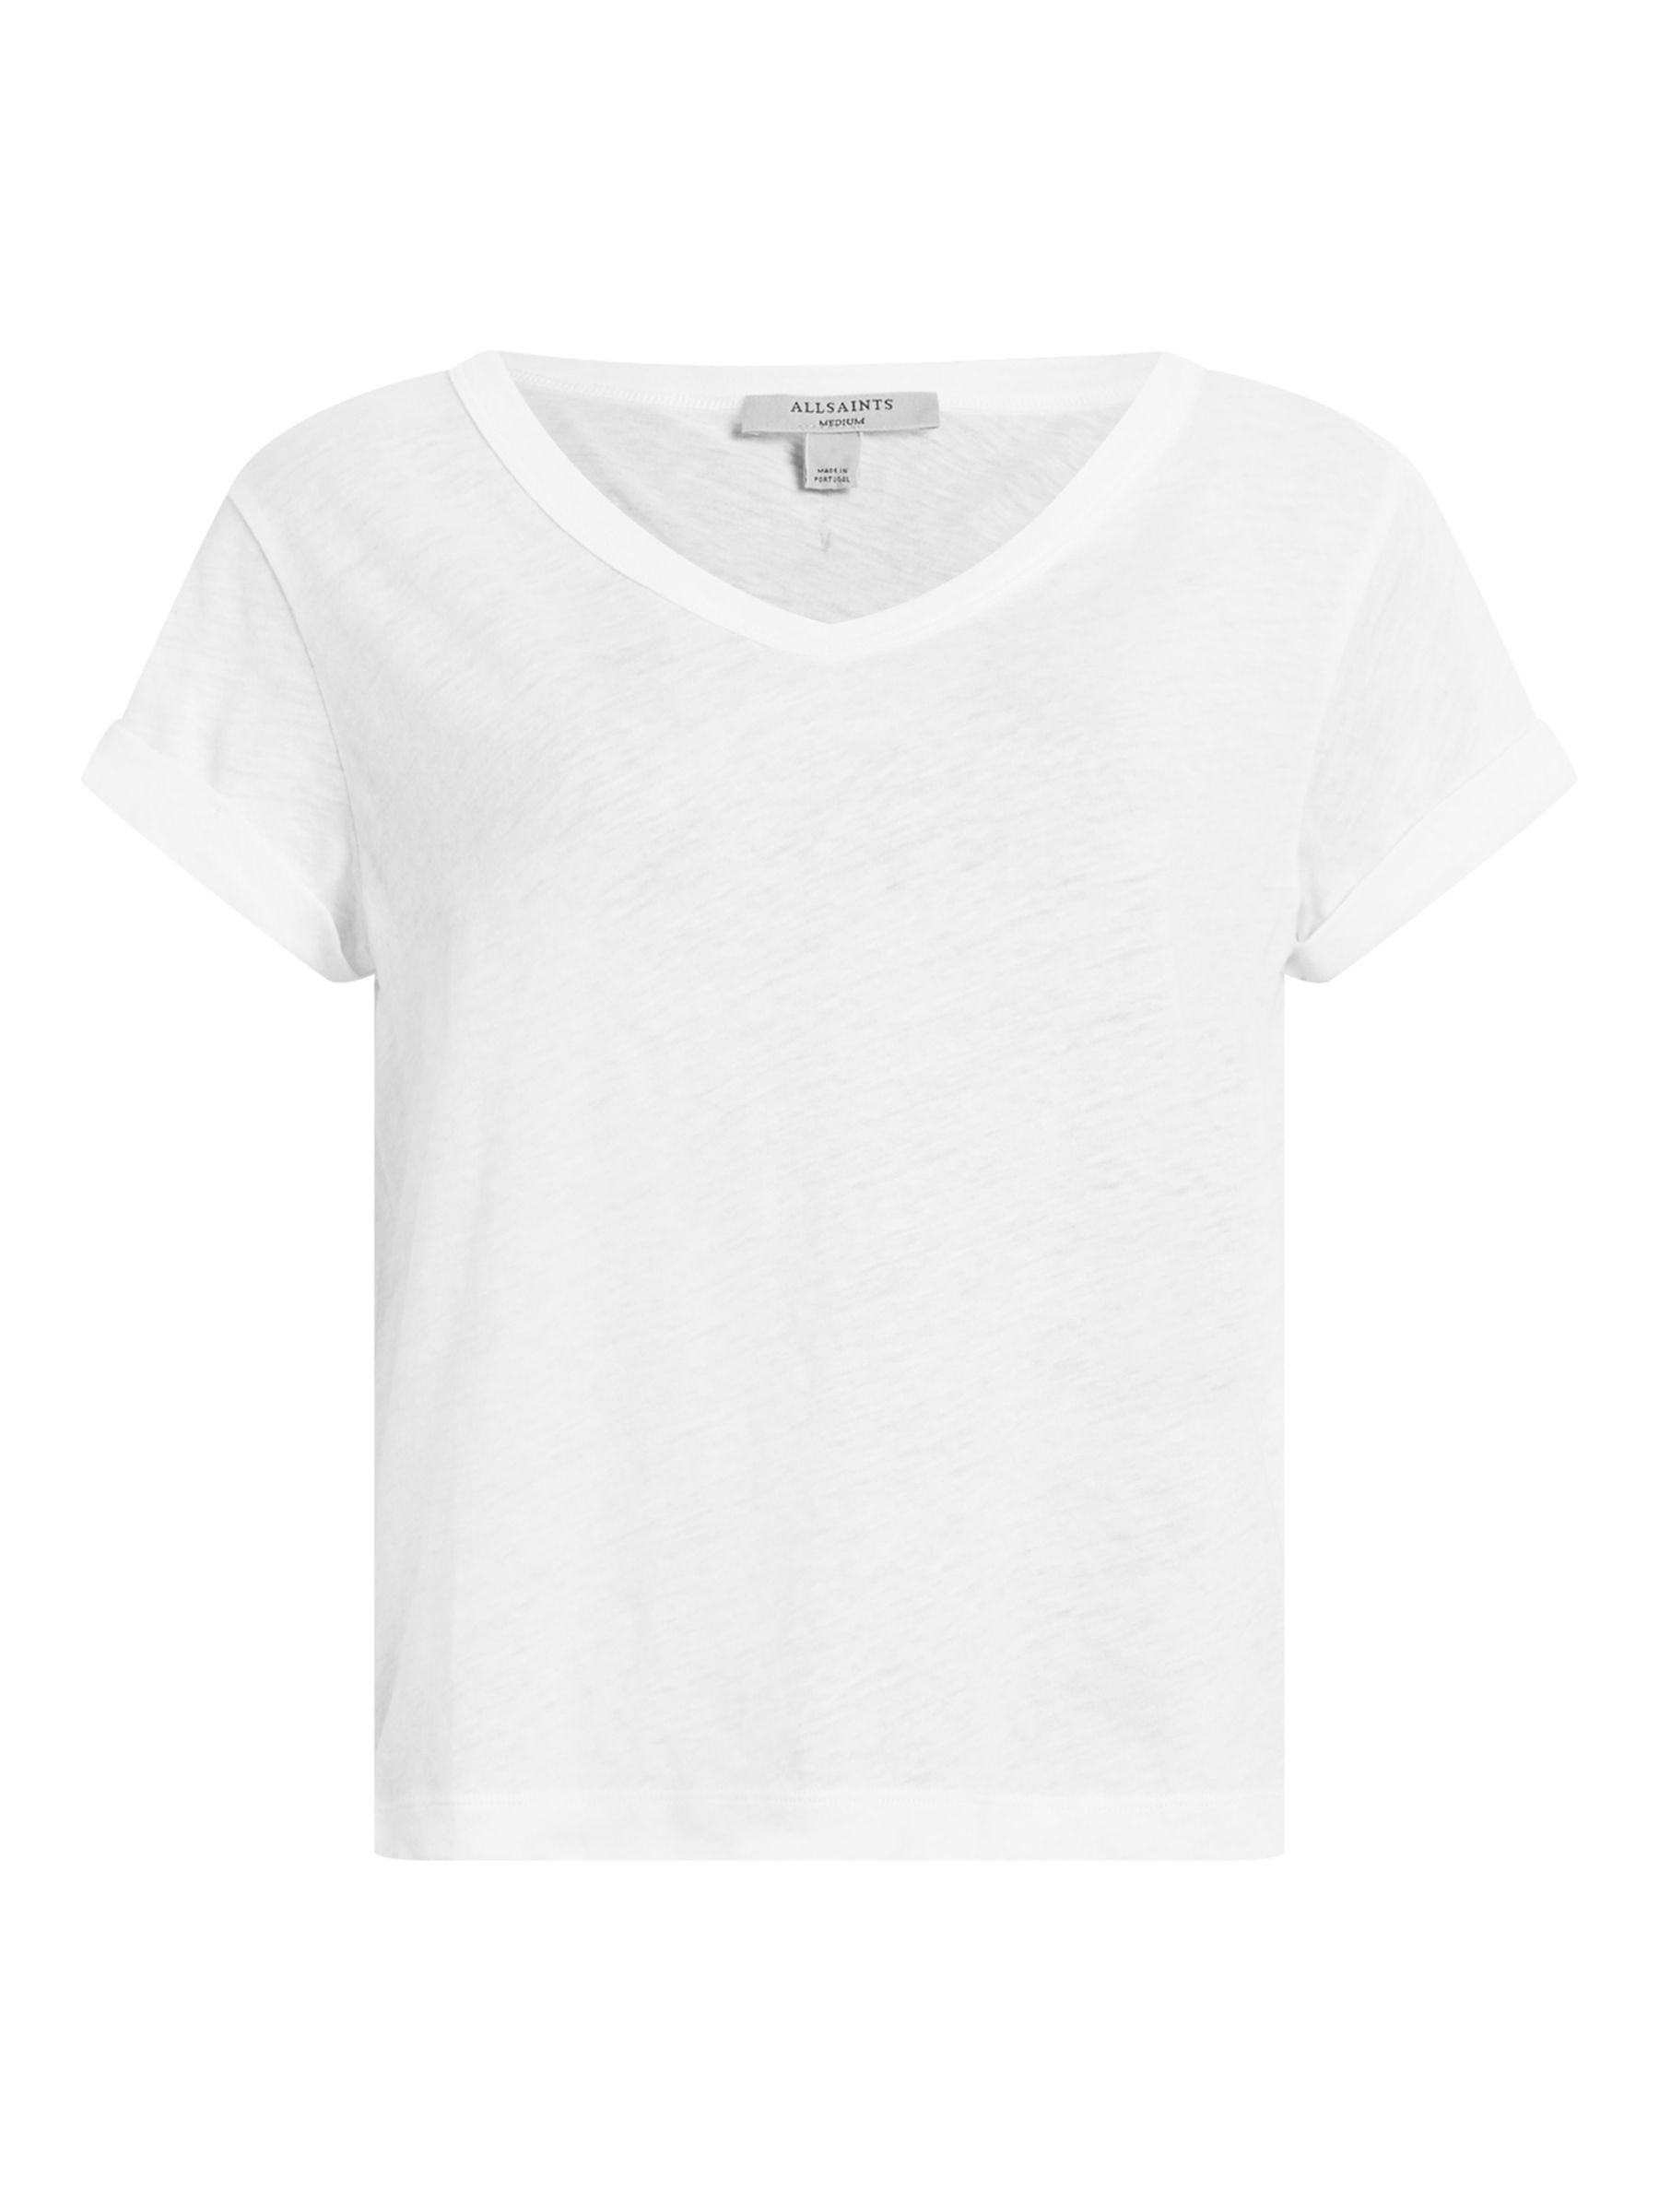 Buy AllSaints Anna V-Neck T-Shirt, White Online at johnlewis.com